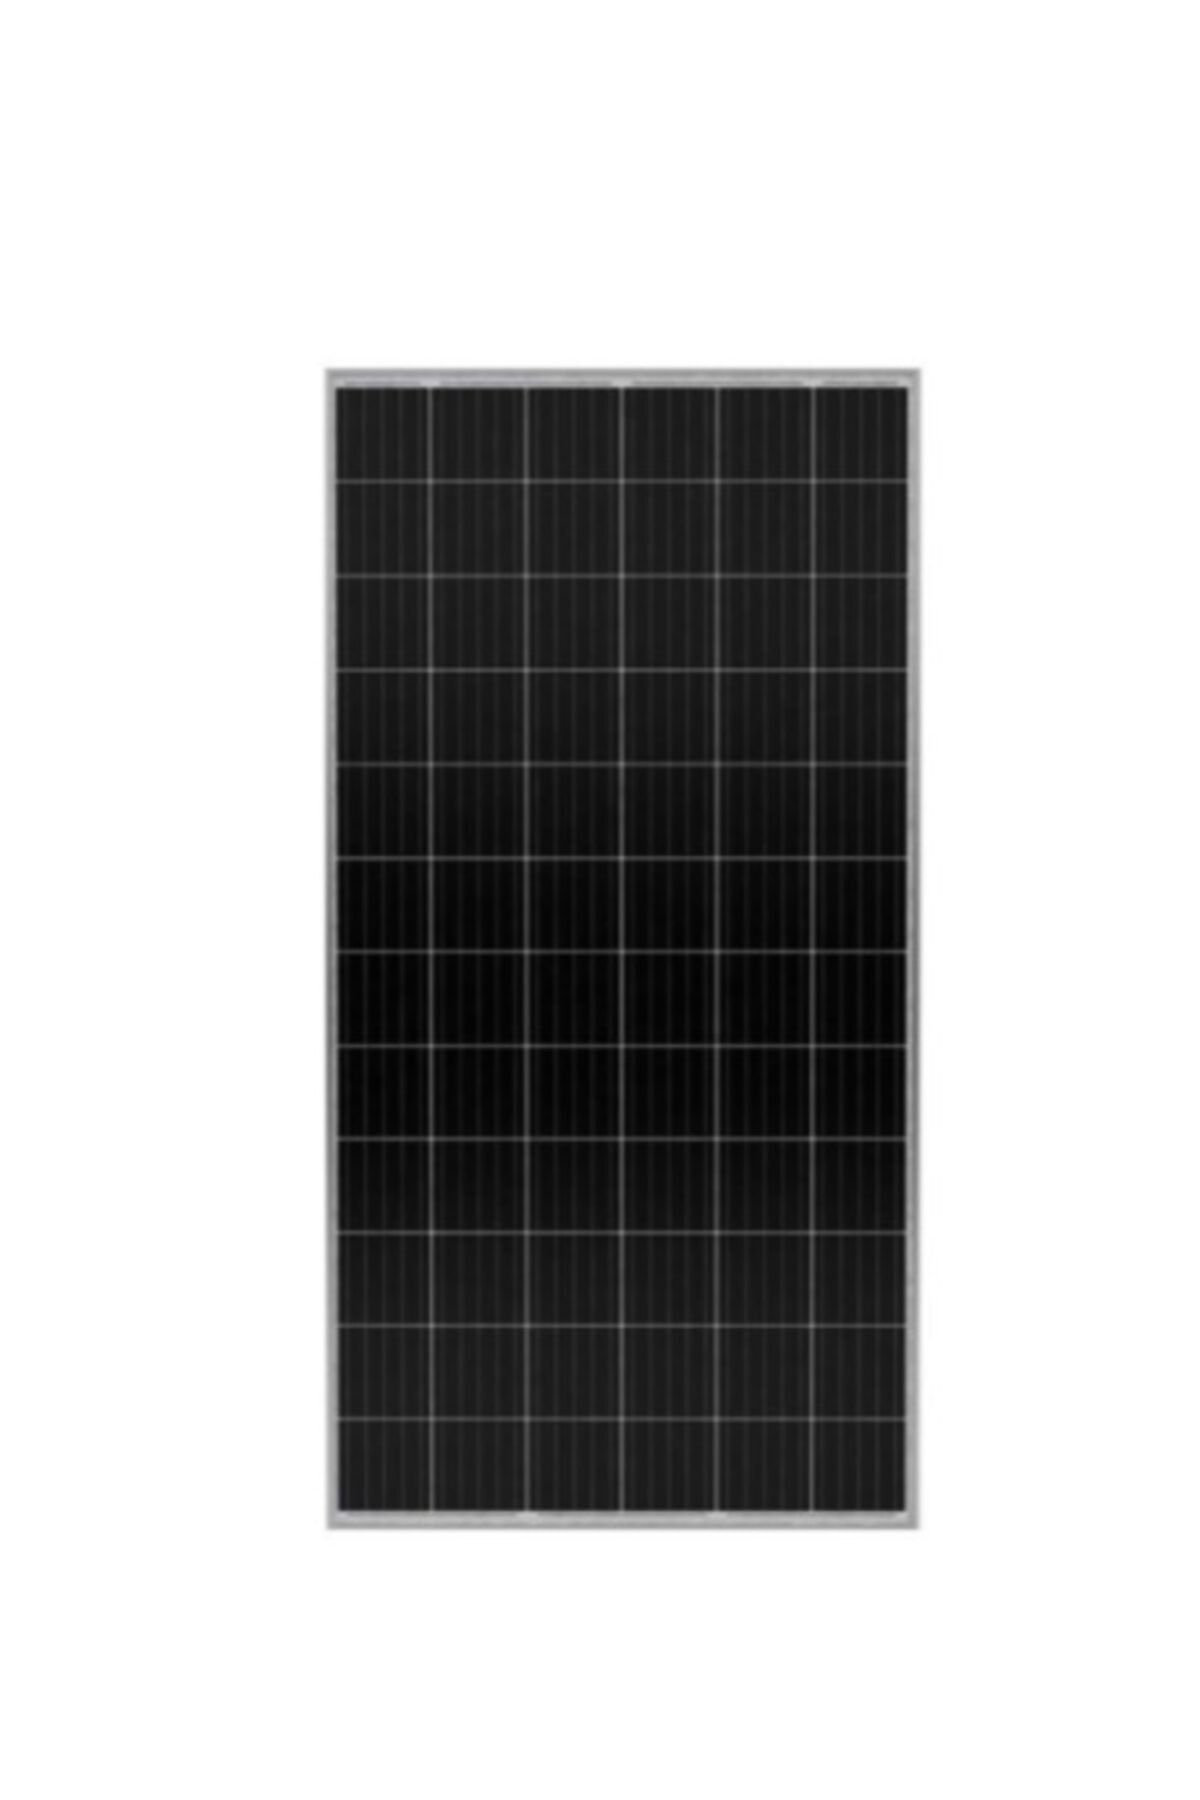 HAZ ENERJİ 400 Watt Monokristal Güneş Paneli - Solar Panel Yeni Nesil Perch Panel B